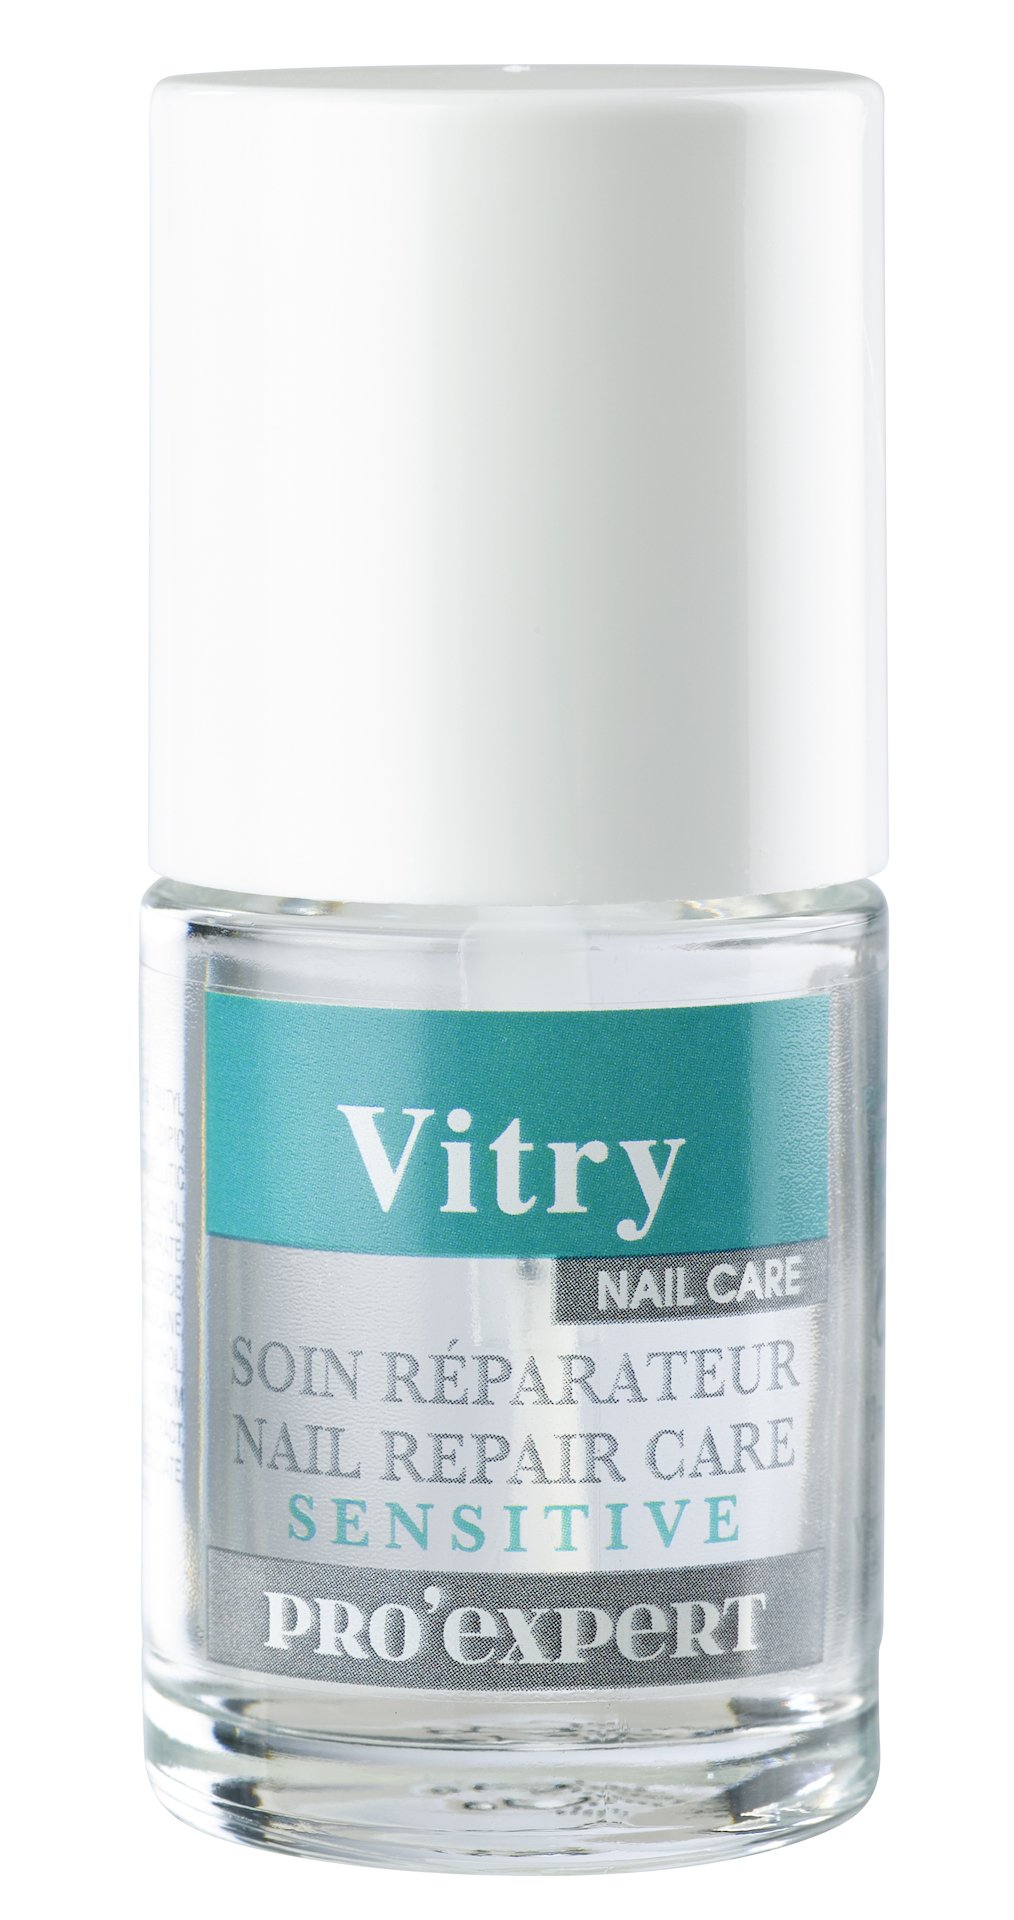 Vitry Sensitive Nail Repair Care Pro Expert 10 ml